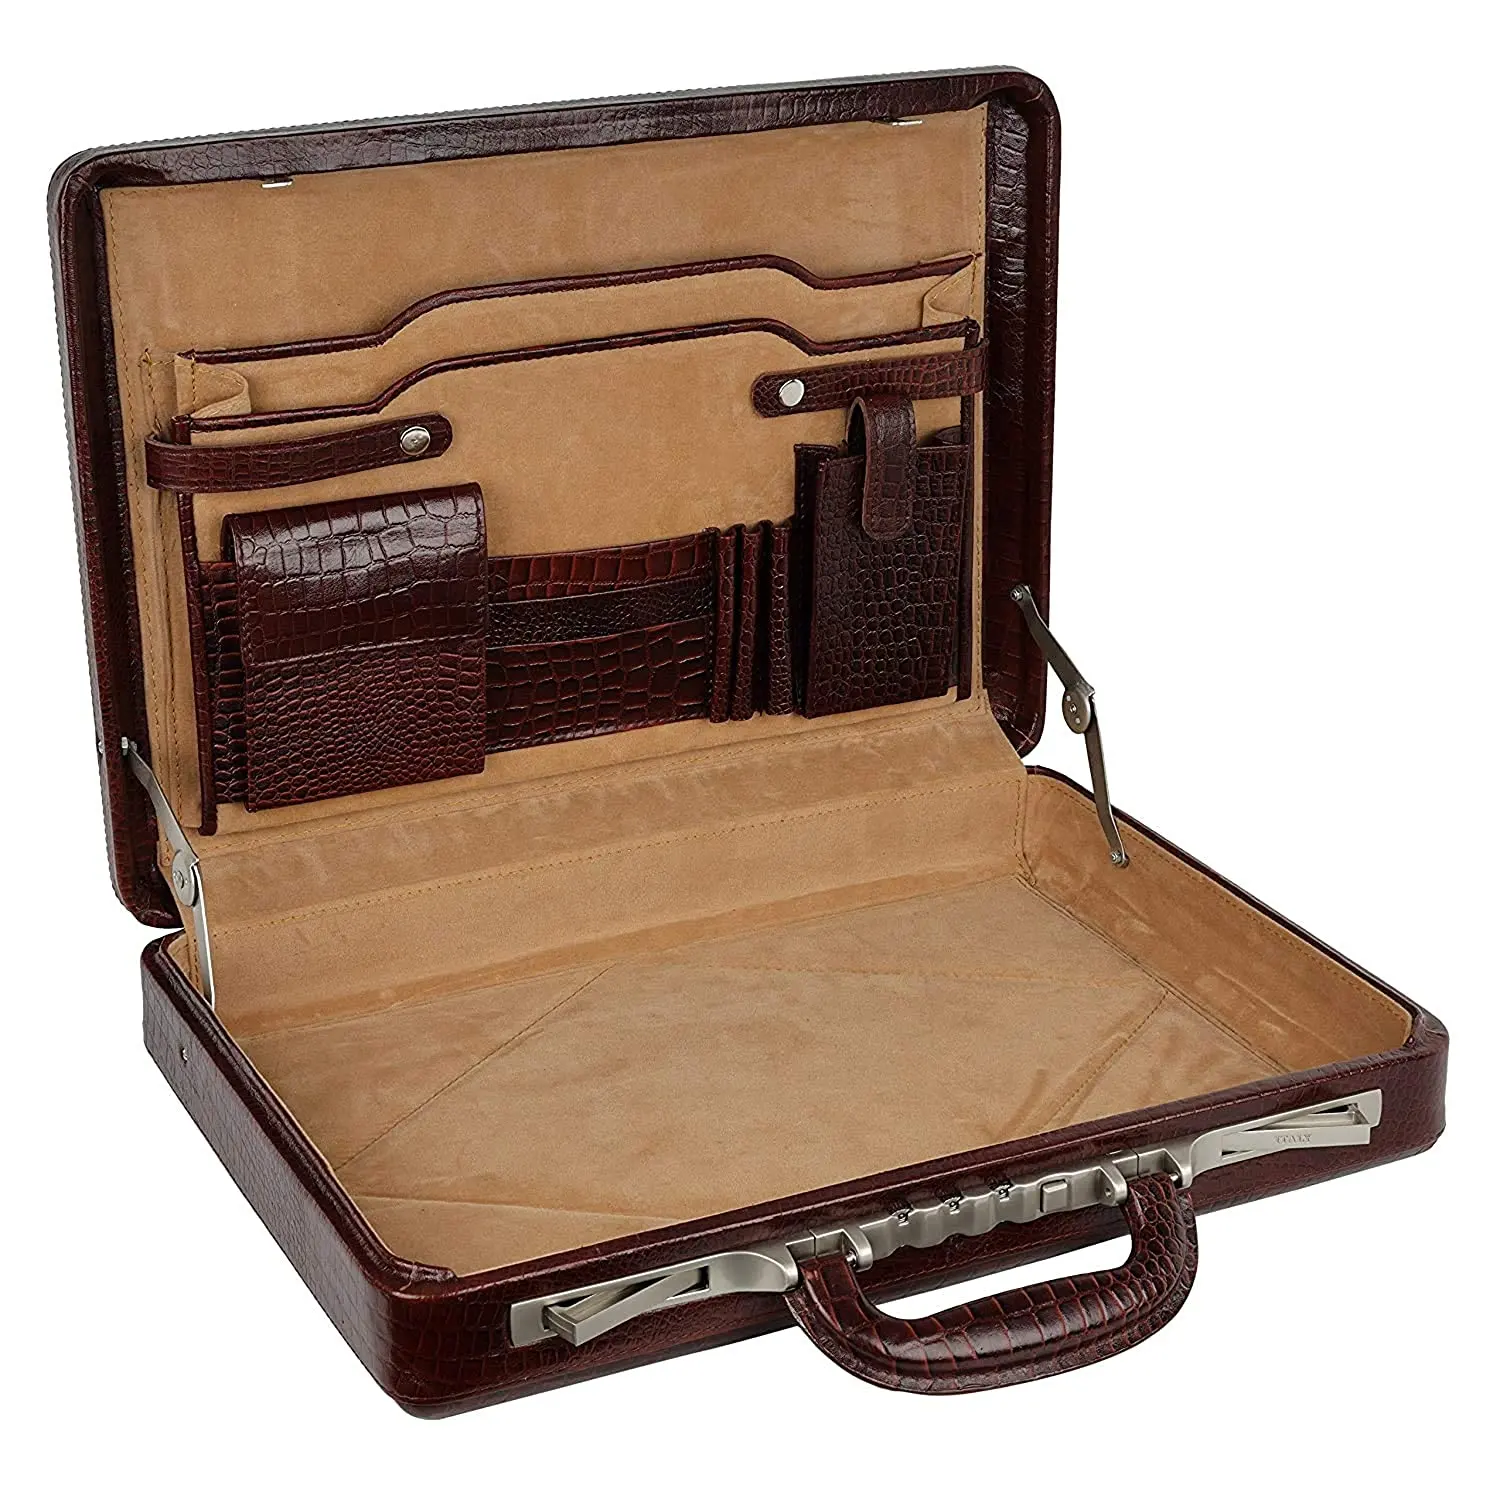 17 дюймов Croco кожаный портфель для мужчин офис с итальянским замком